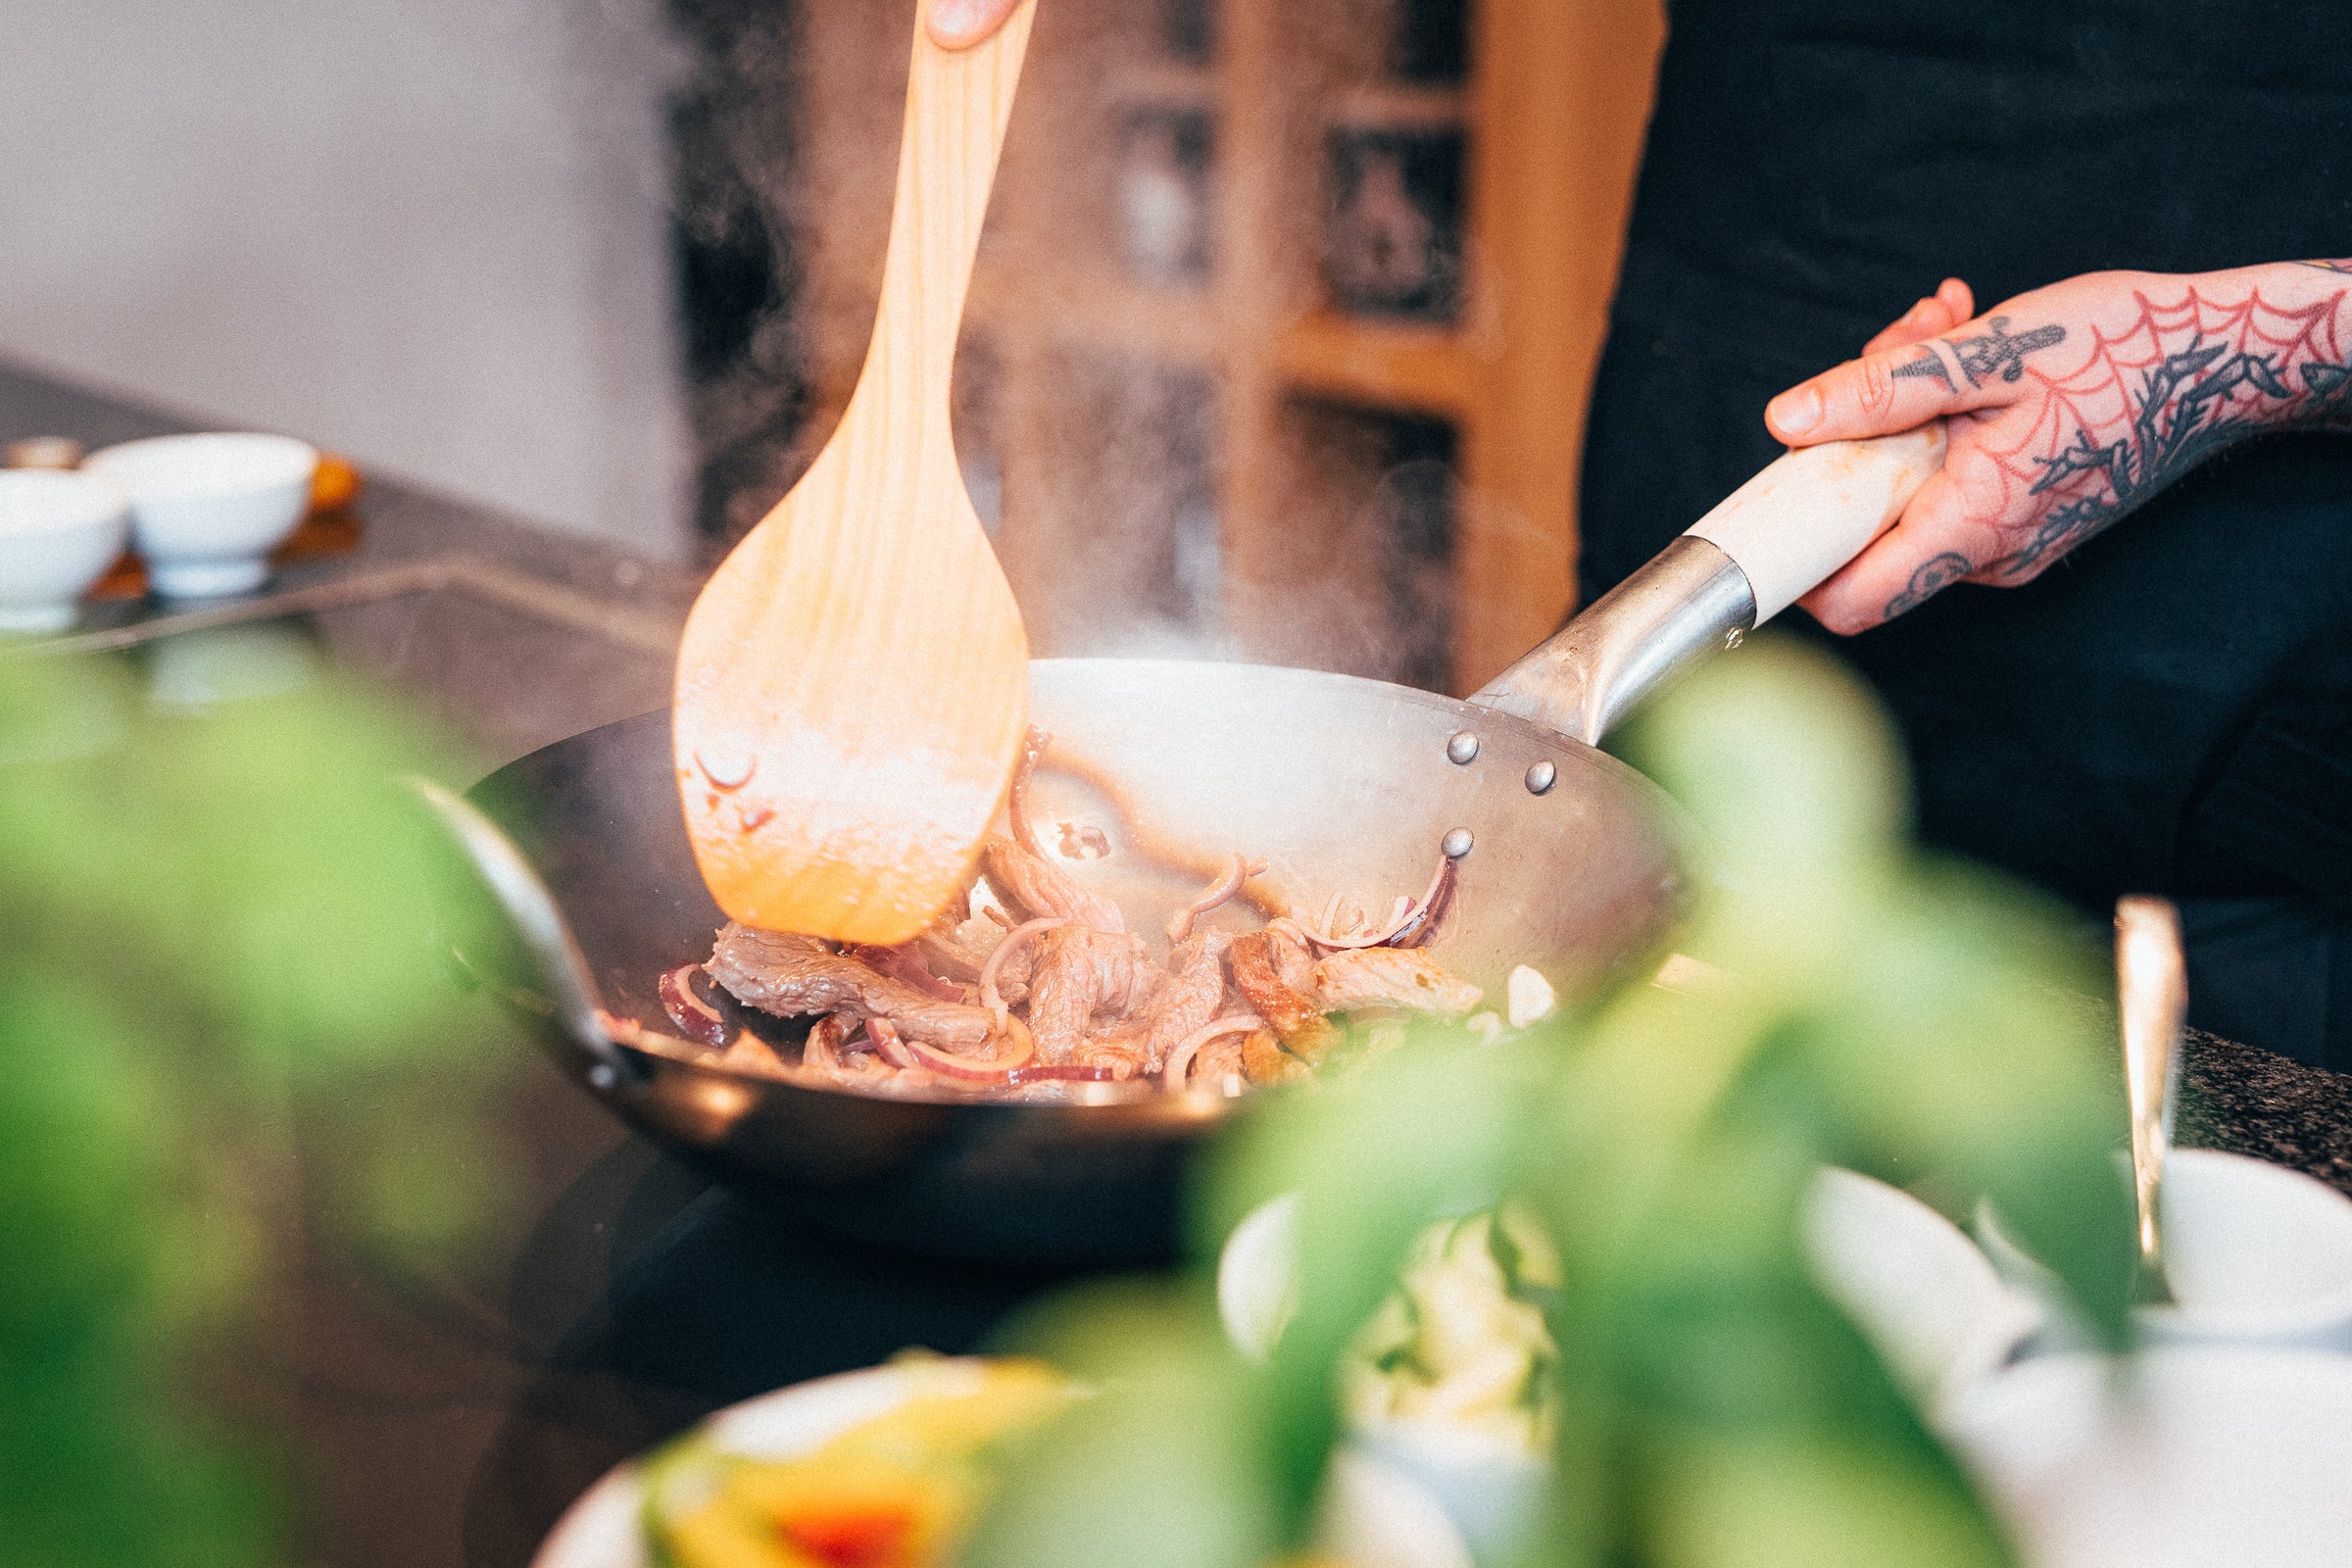 Nuestro chef profesional, Mane, saltea chuletas con cebolla en nuestro wok de fondo plano pasoli martillado a mano de forma tradicional, utilizando nuestra espátula de wok pasoli de madera de cerezo.